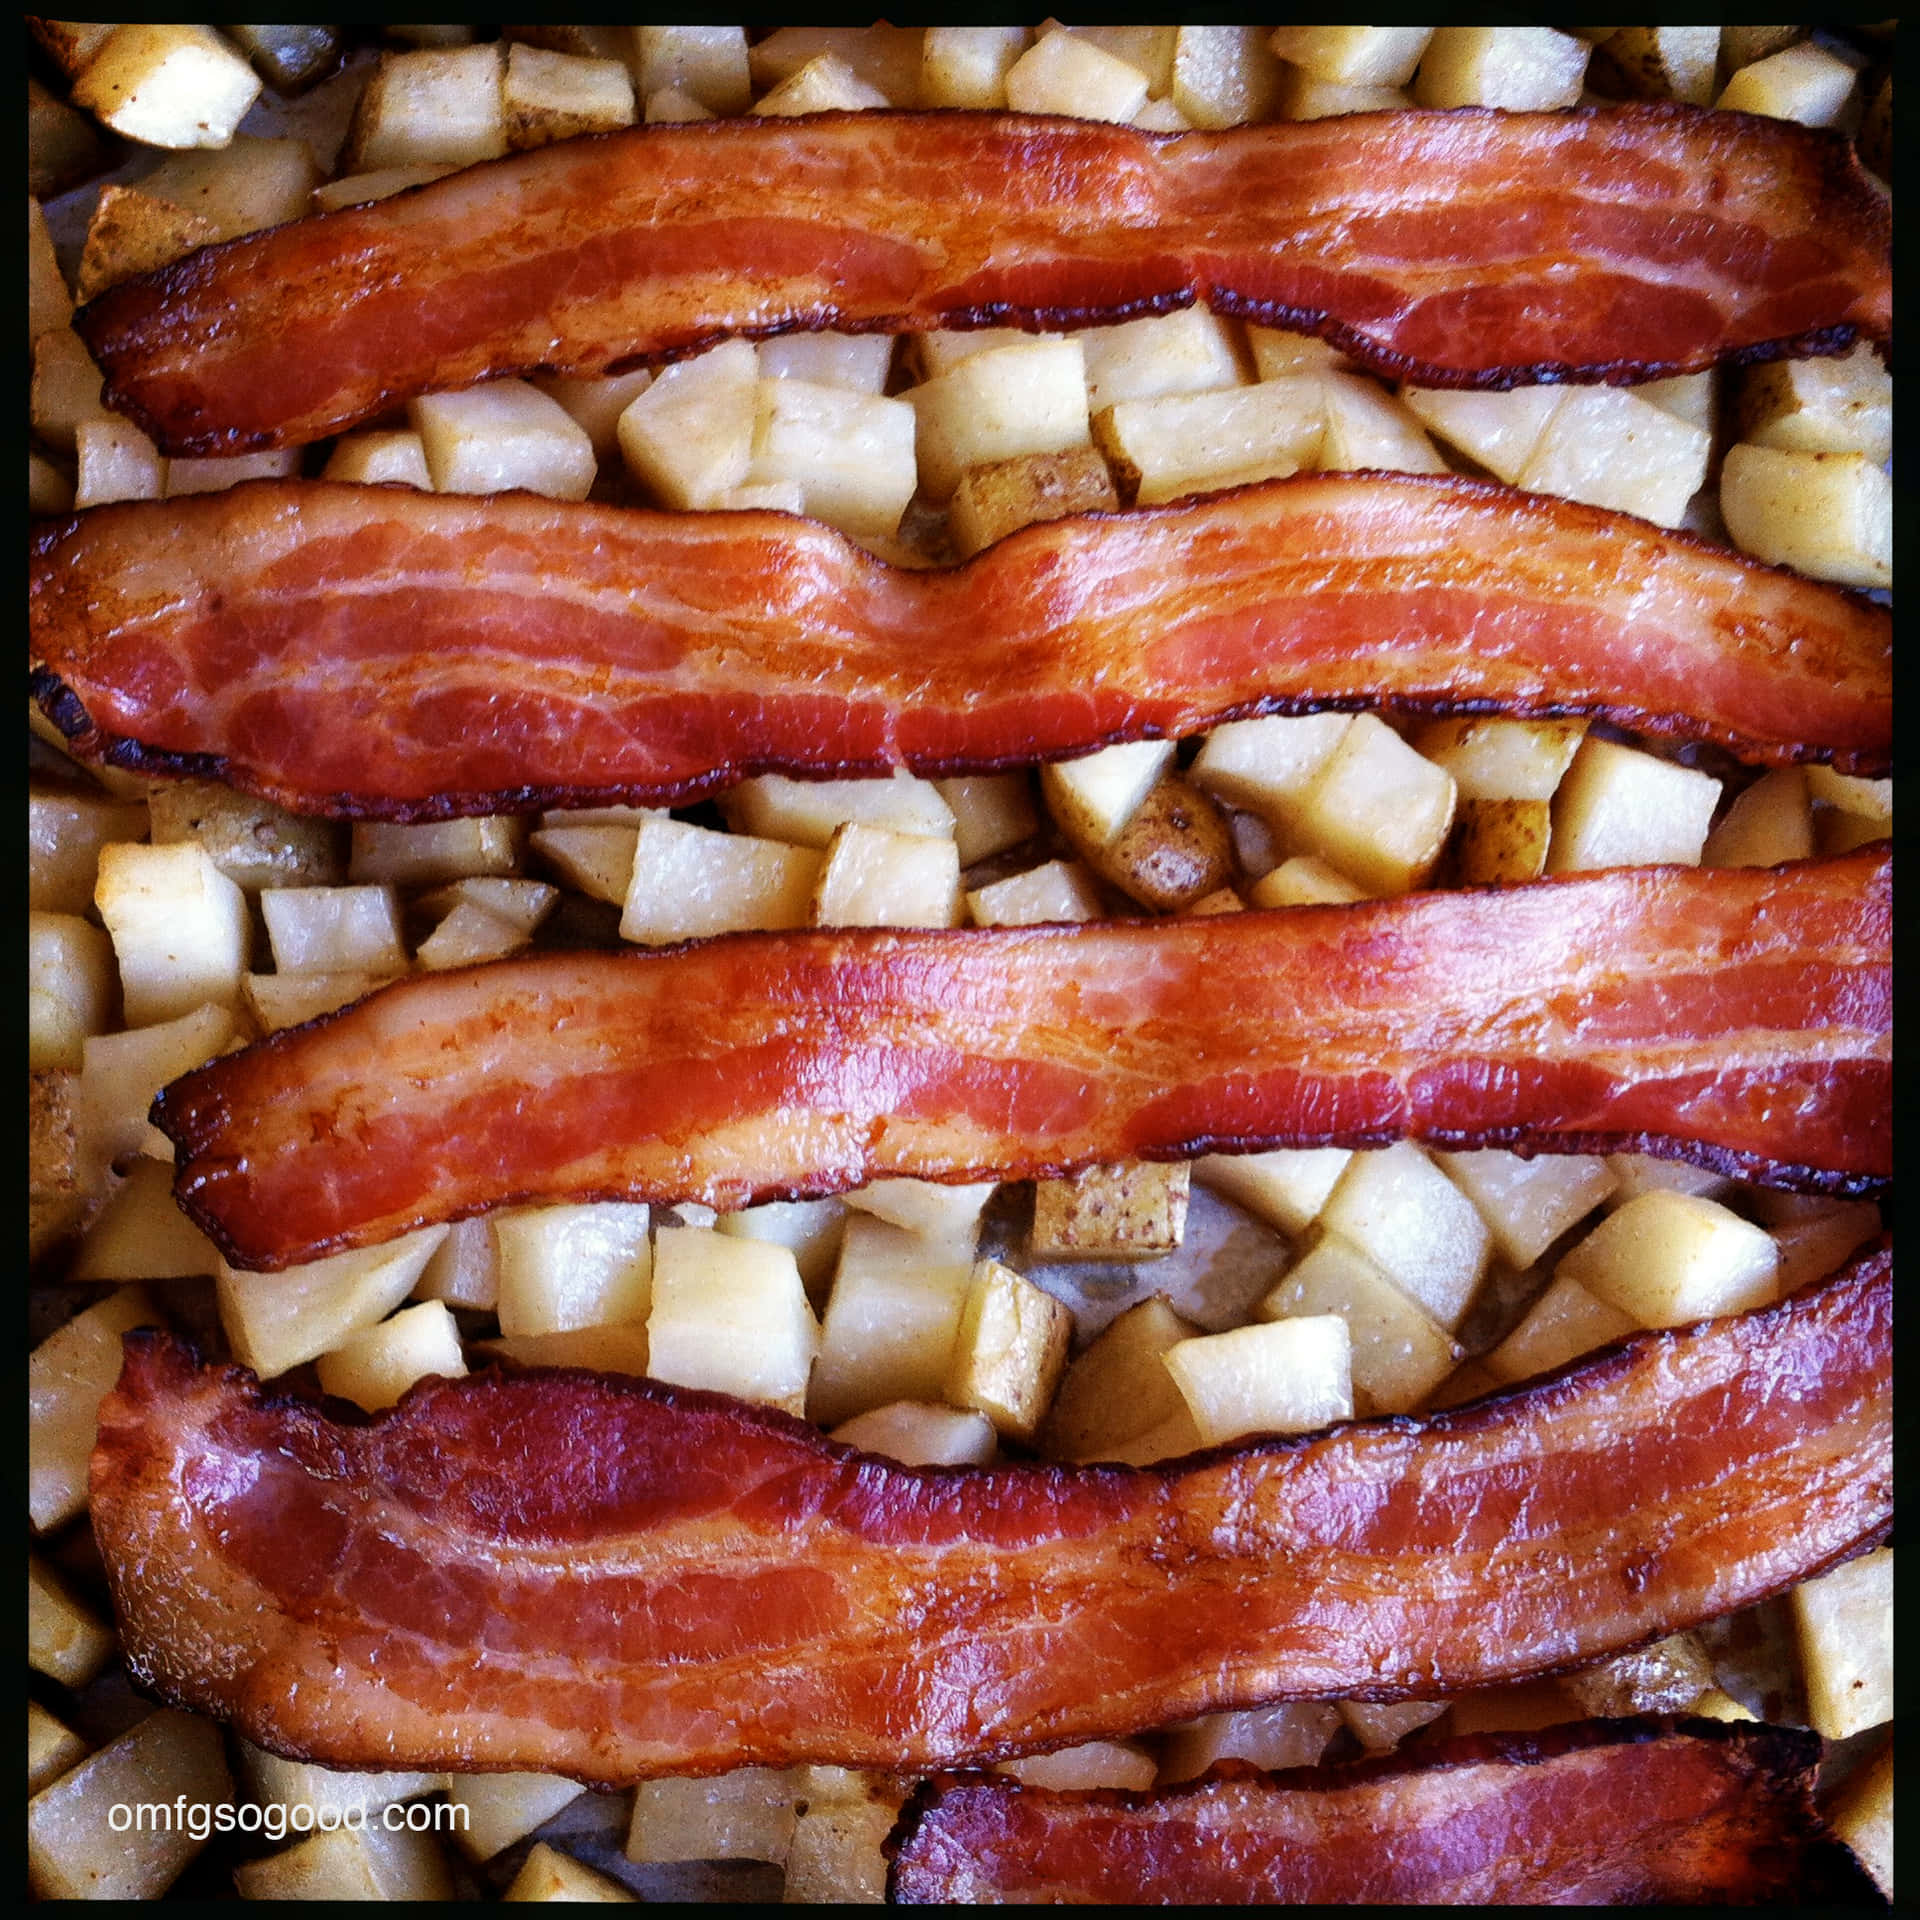 Bildgebratene Baconscheibe